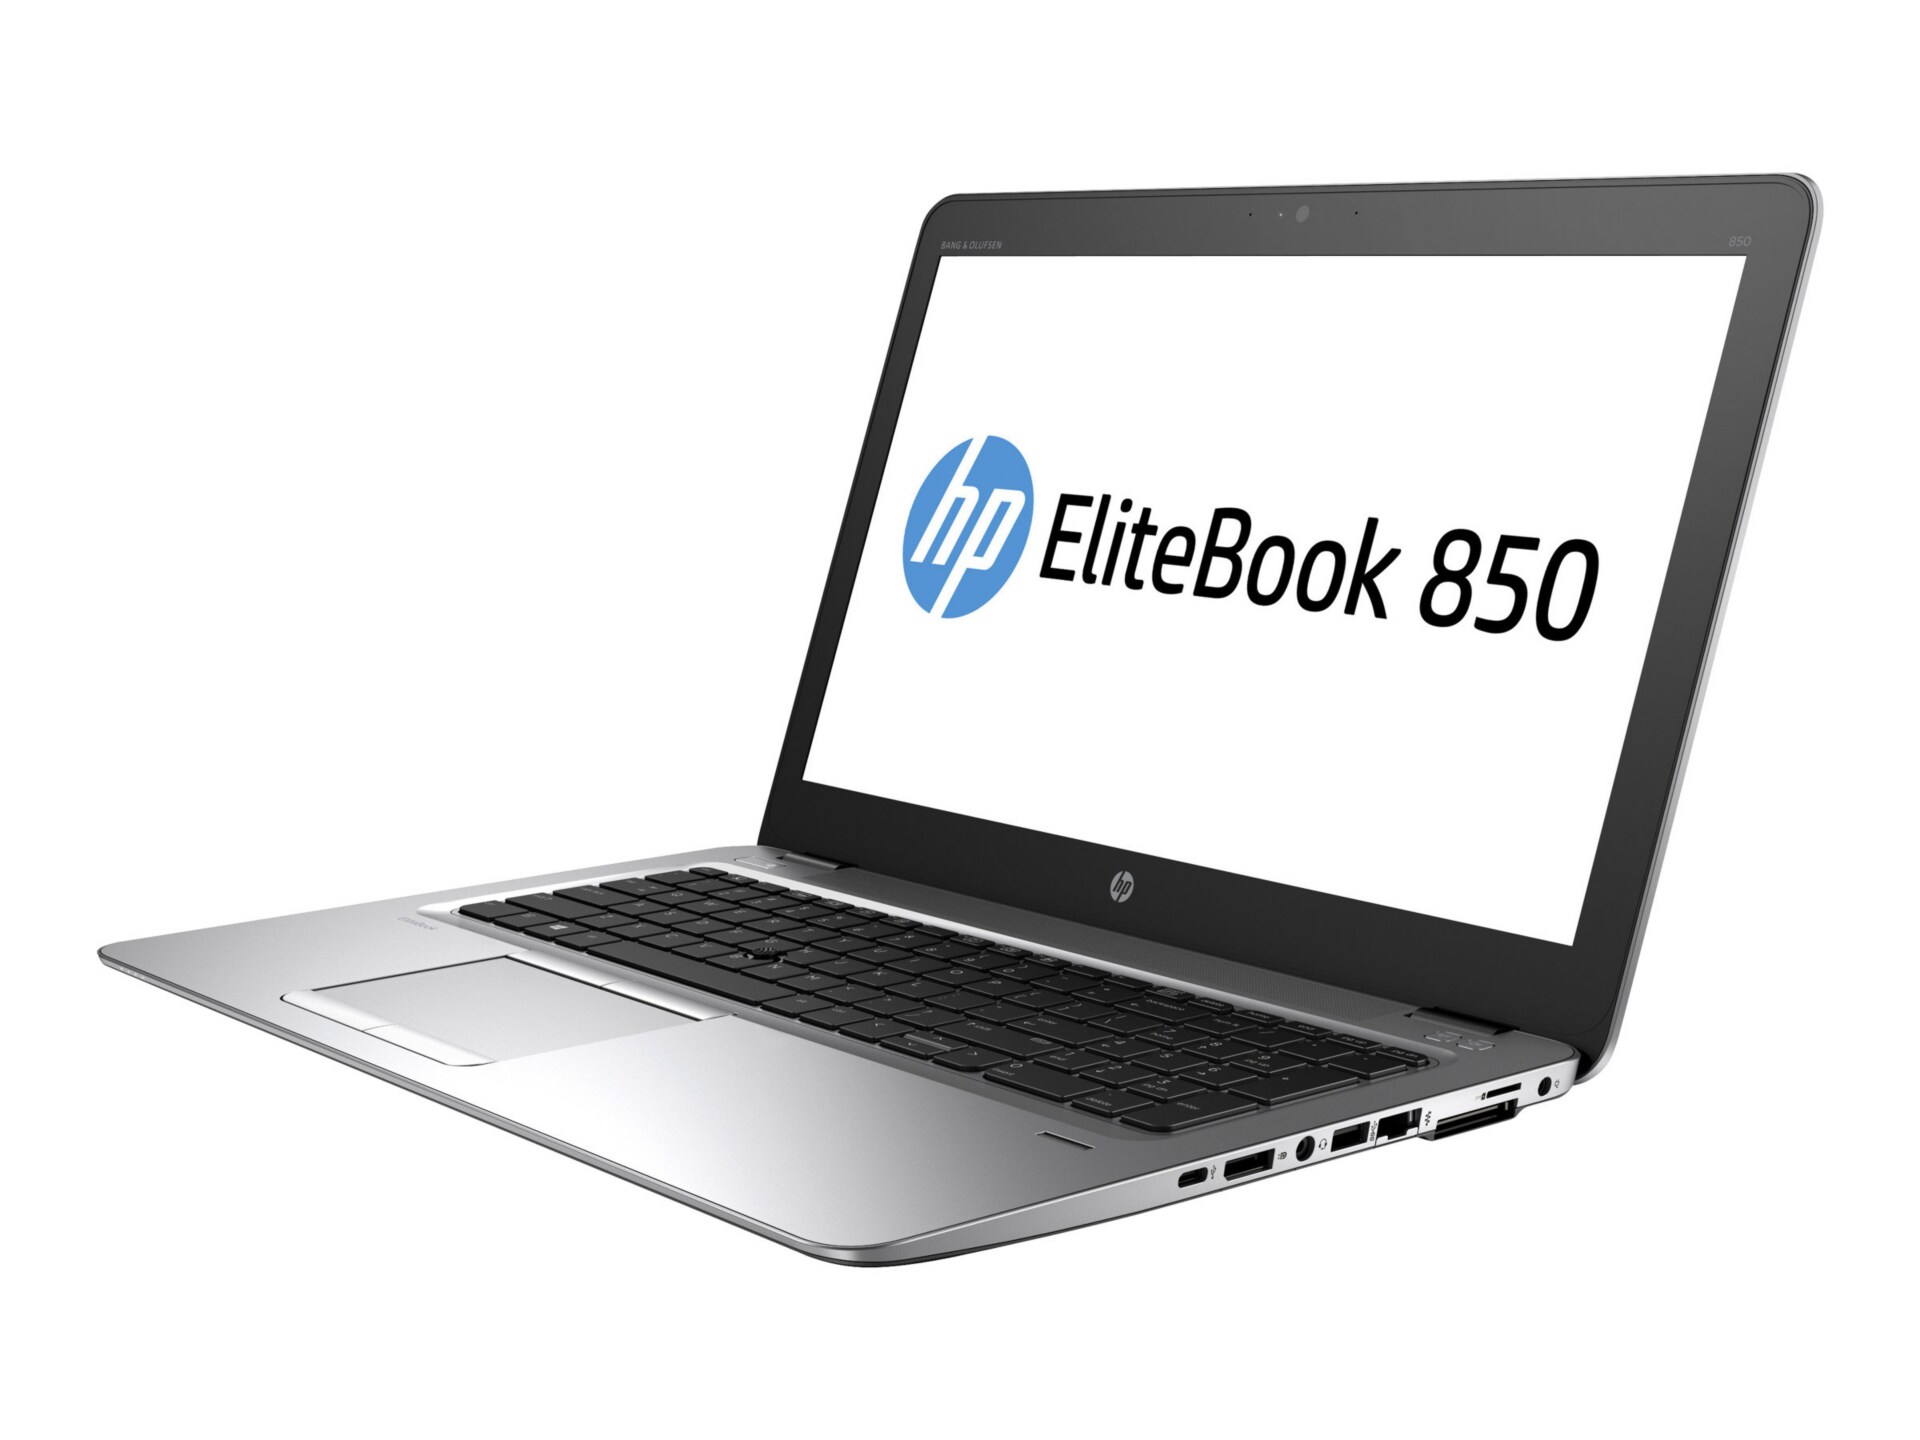 HP EliteBook 850 G3 - 15.6" - Core i5 6300U - 8 GB RAM - 128 GB SSD - US